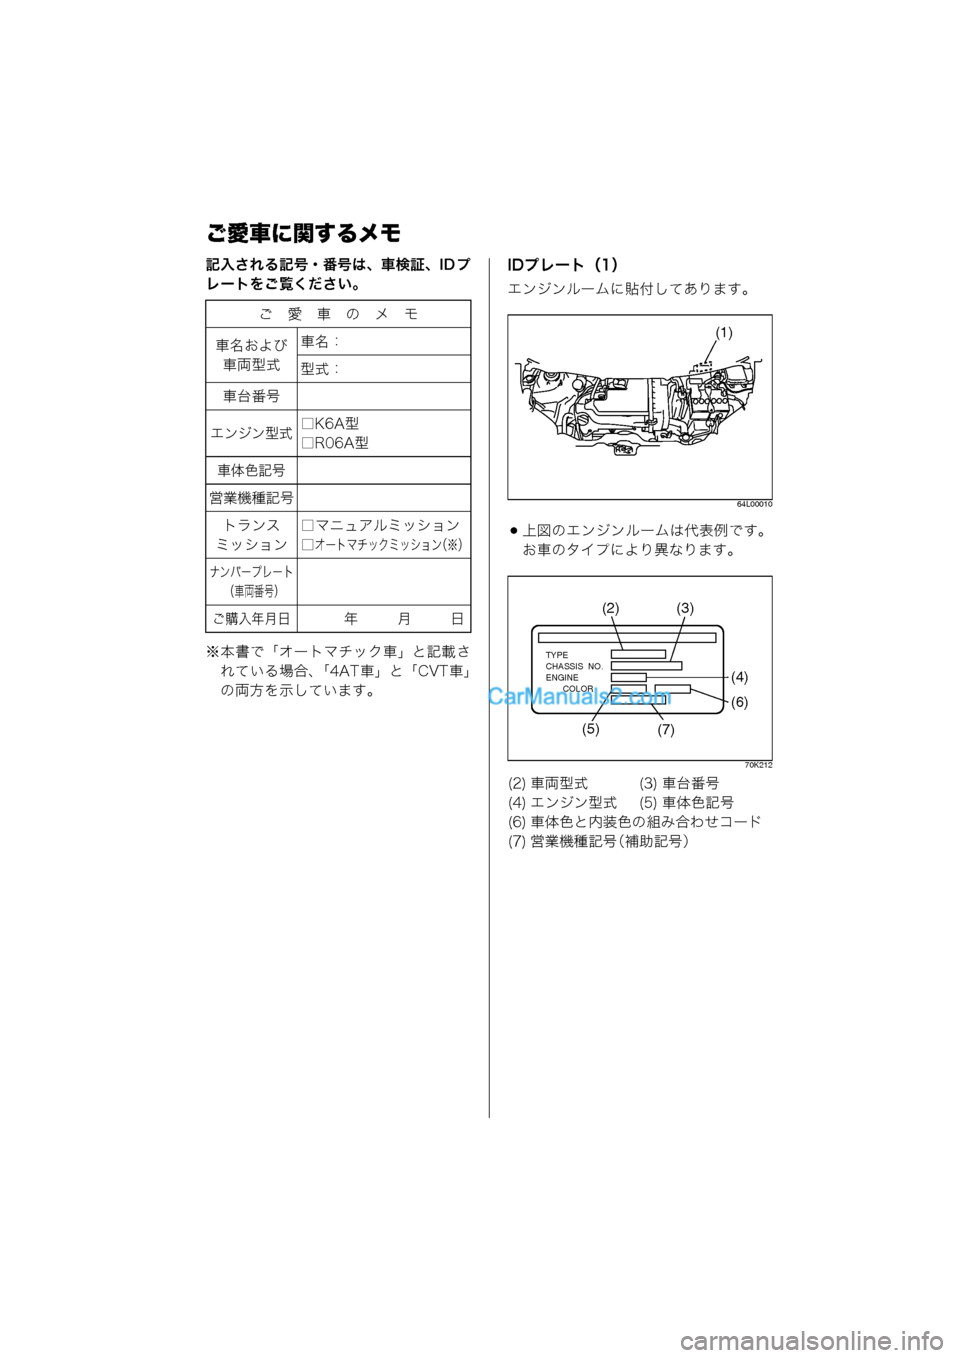 MAZDA MODEL CARROL 2013  取扱説明書 (キャロル) (in Japanese) ご愛車に関するメモ
記入される記号・番号は、車検証、ID プ
レートをご覧ください。
※本書で「オートマチック車」と記載されている場合、 「4AT 